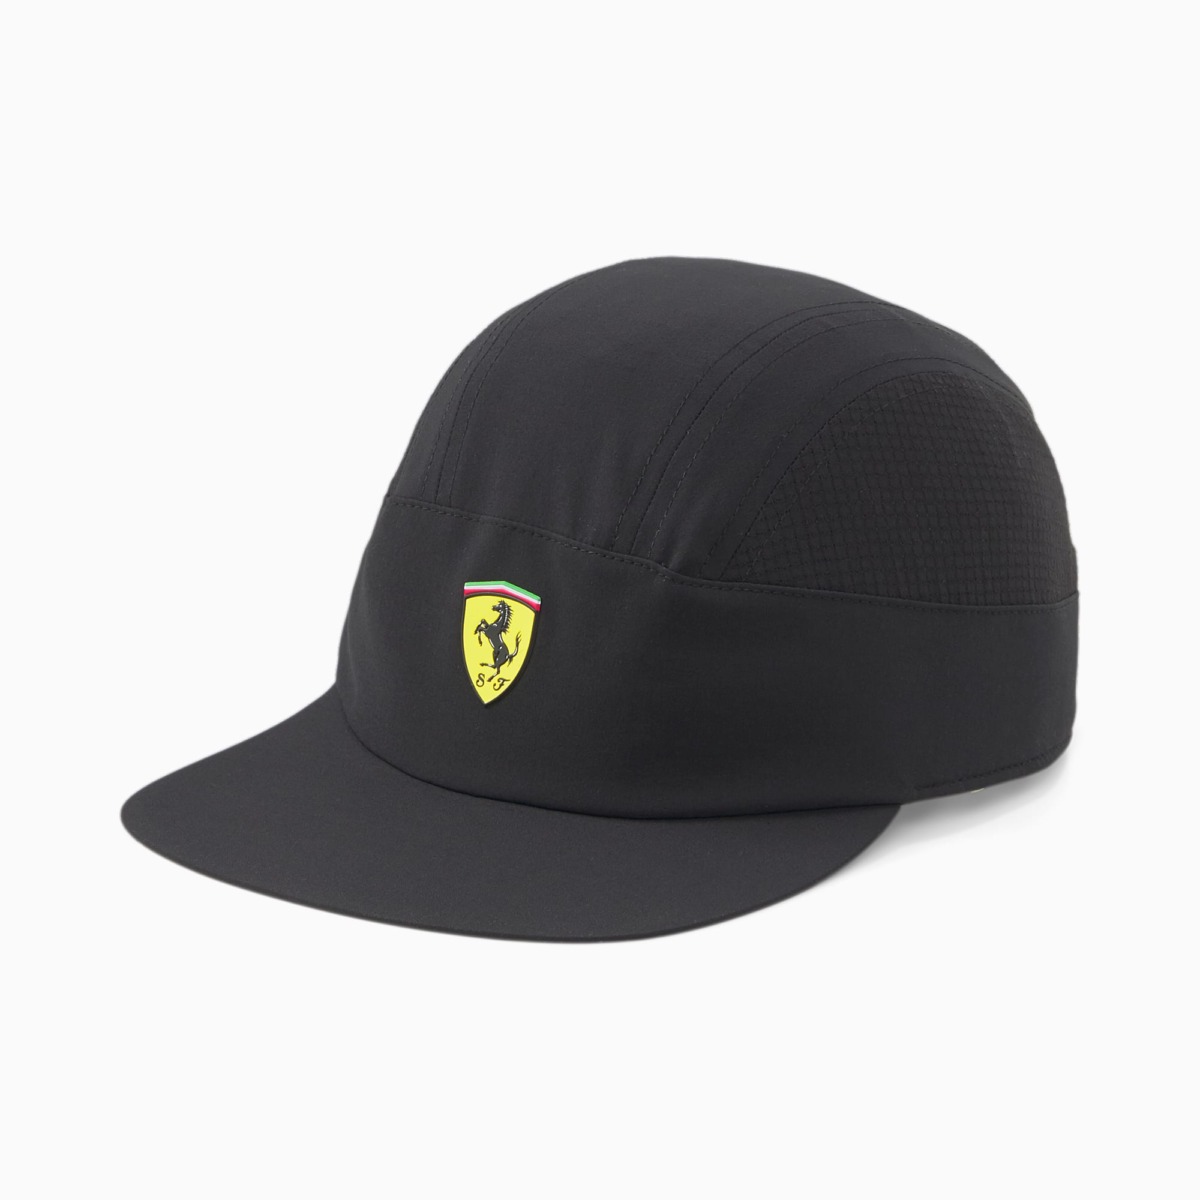 Puma Black Scuderia Ferrari Sptwr Rct Cap For Men Mens CAPS GOOFASH